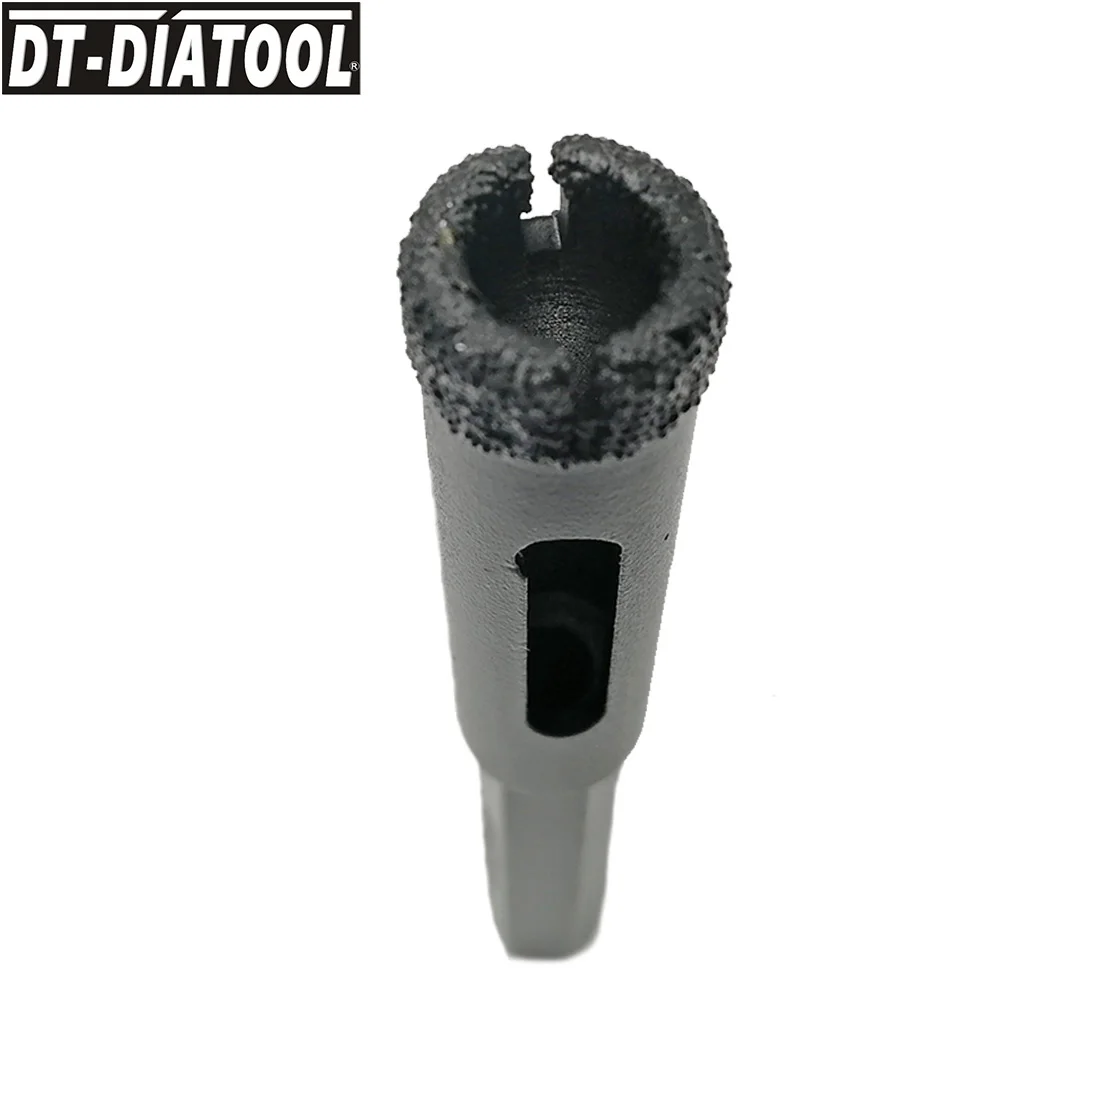 DT-DIATOOL, 1 комплект/4 шт., алмазные сверла с шестигранным хвостовиком, кольцевая пила для бурения гранита и мрамора, каменной кладки, бетонной плитки/керамики